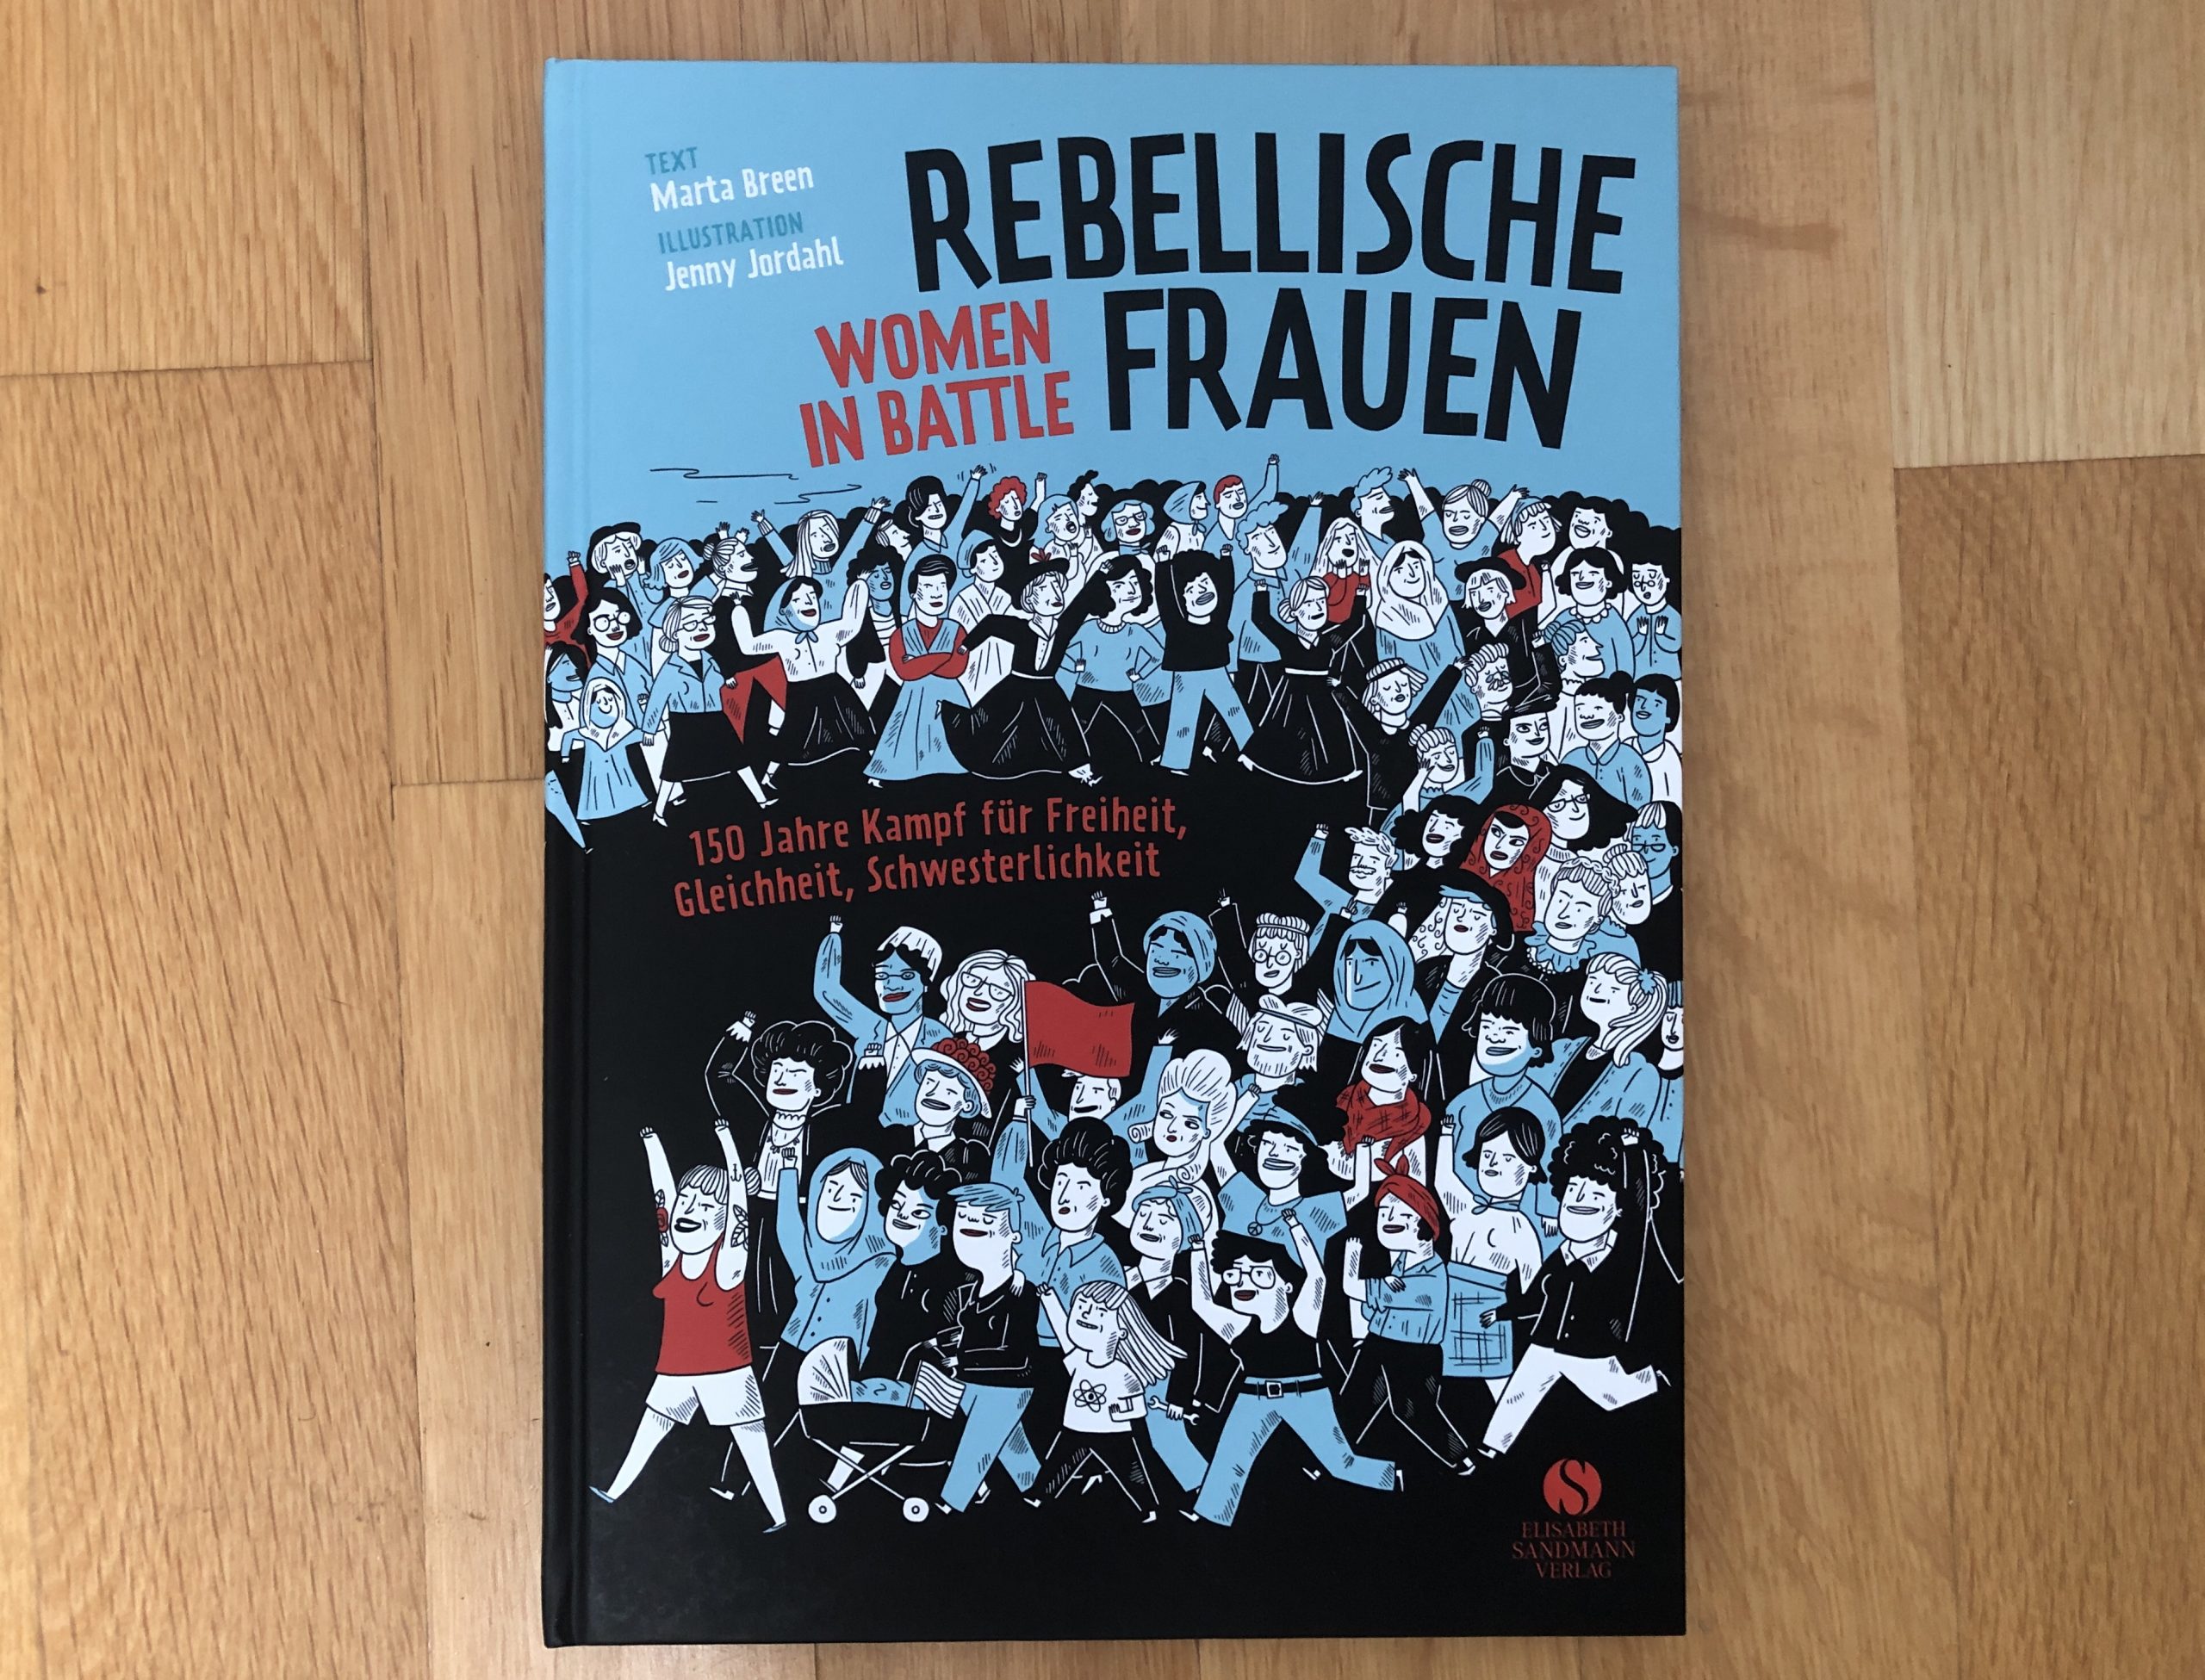 Rebellische Frauen — Women in Battle